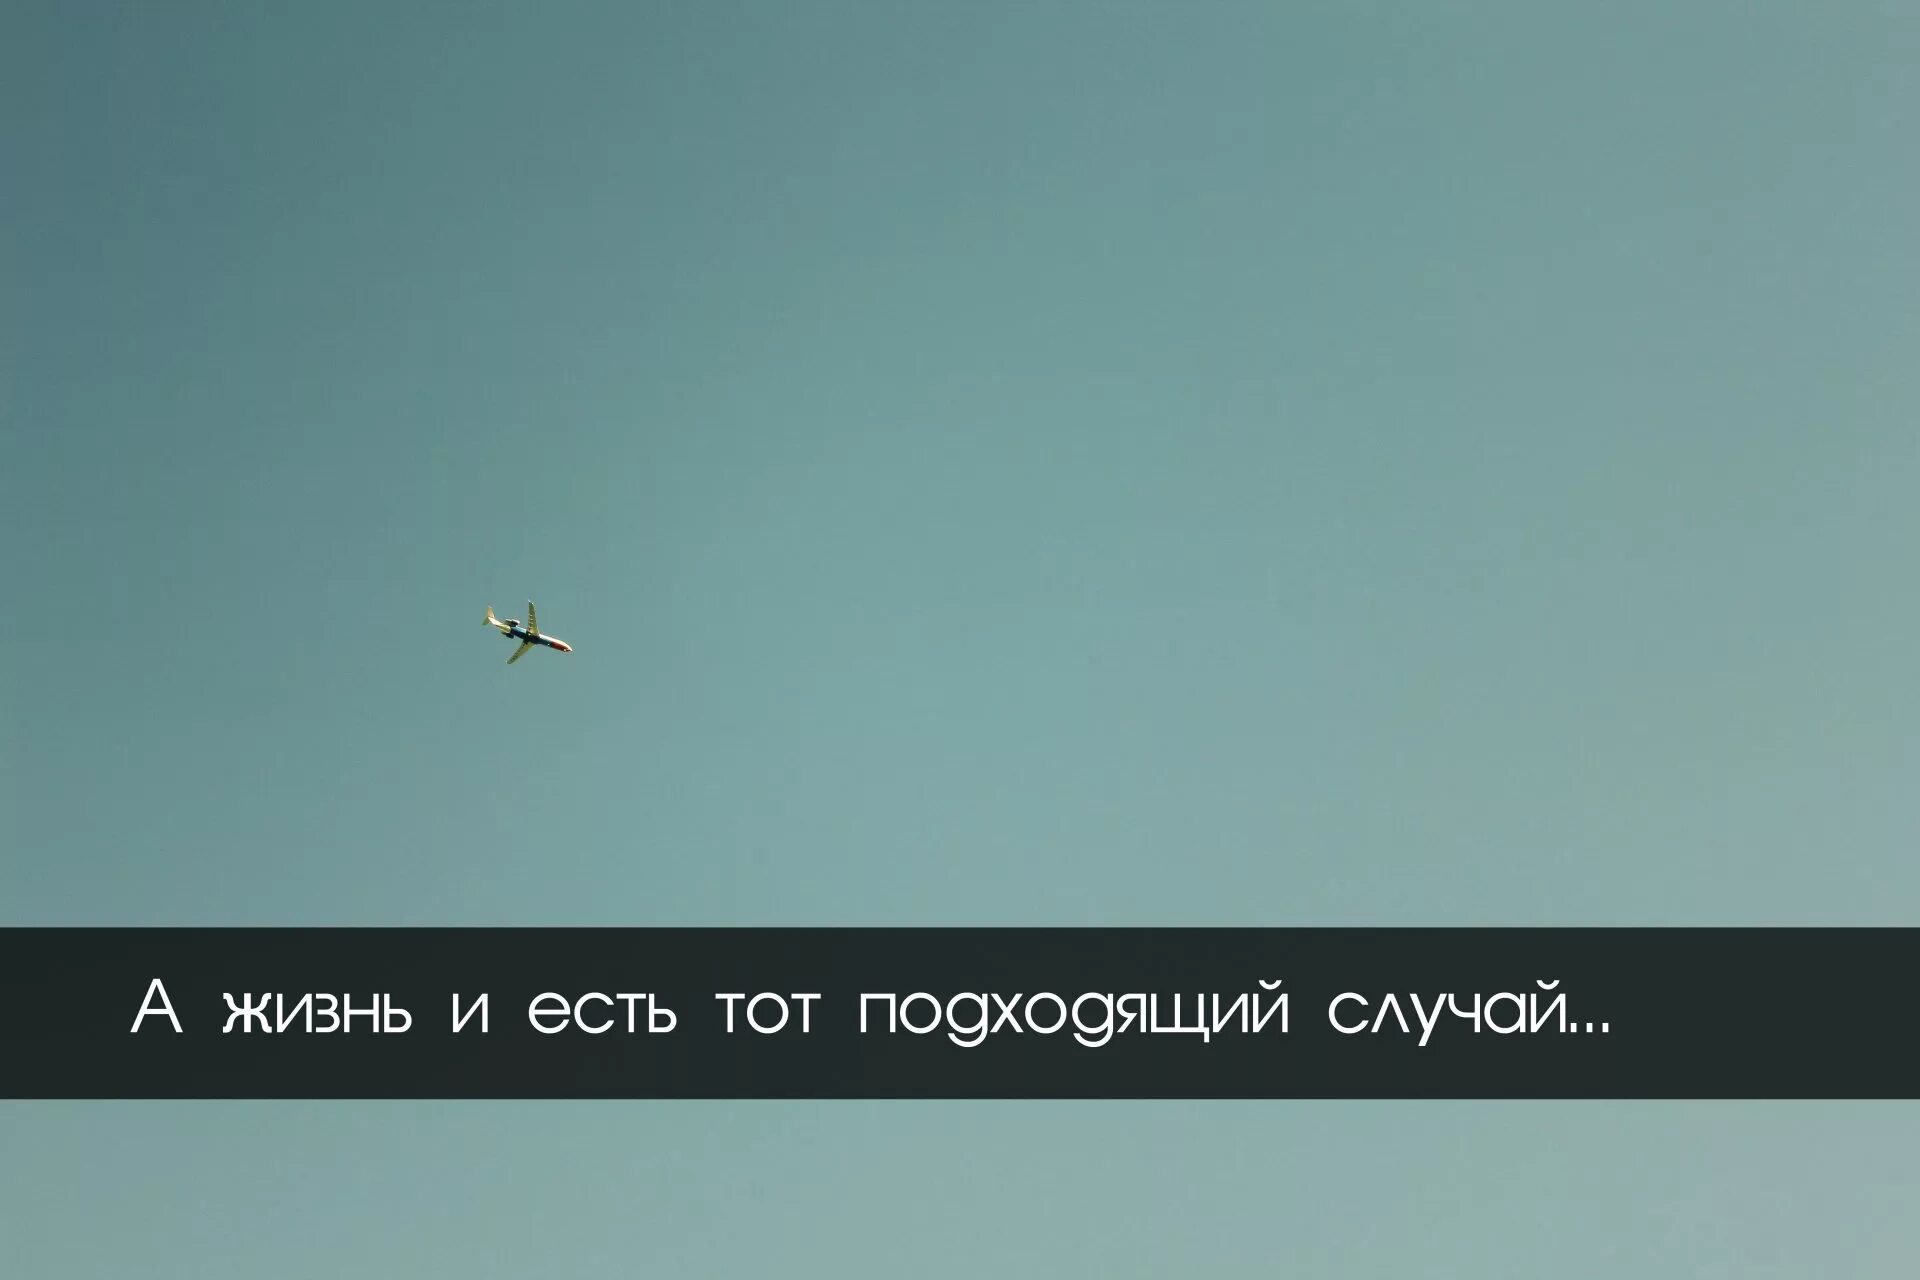 Мотивация на русском. Цитаты про небо. Цитаты. Цитаты про самолеты и небо. Цитаты про самолеты.